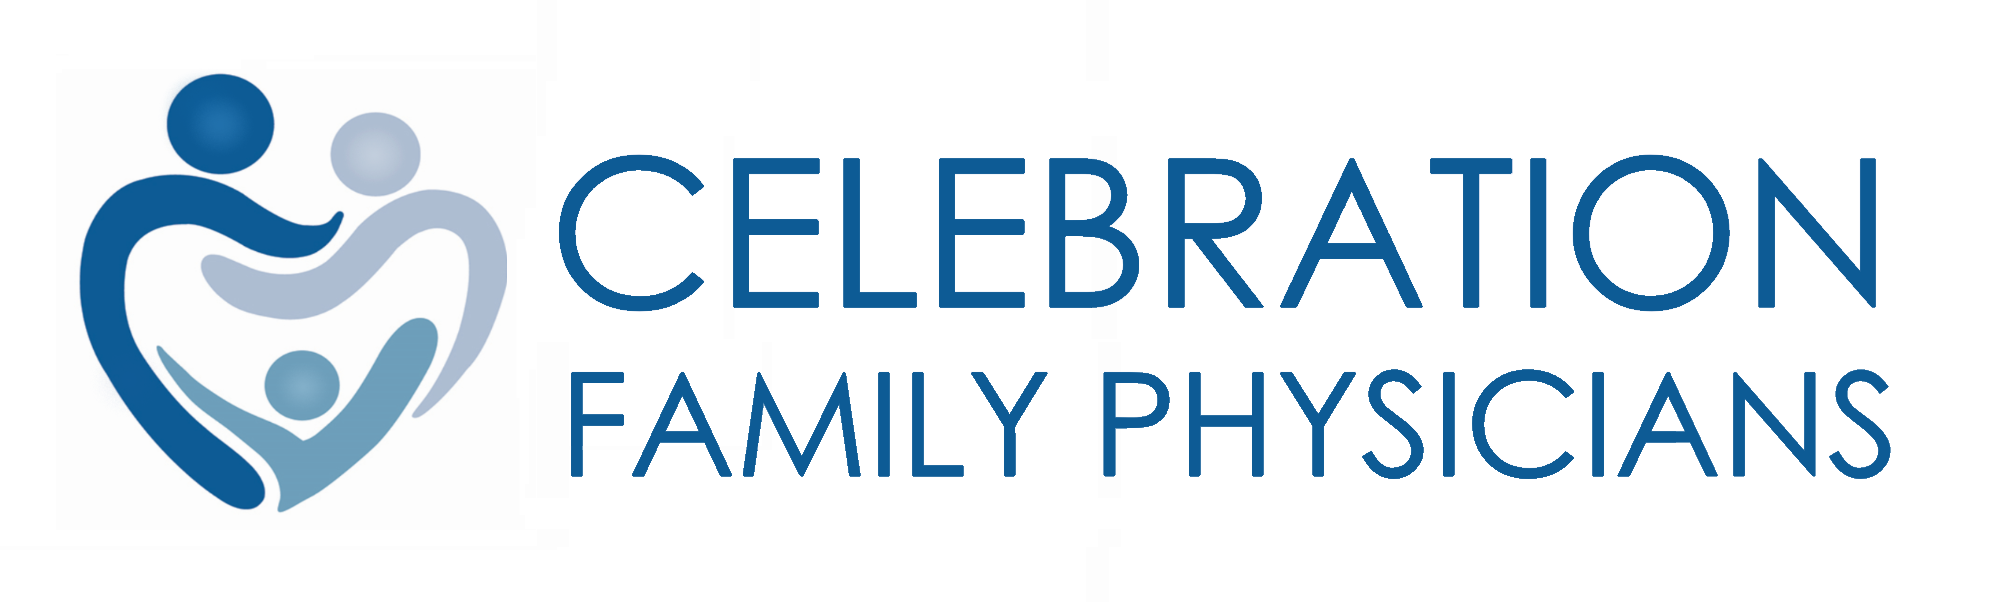 Celebration Family Physicians